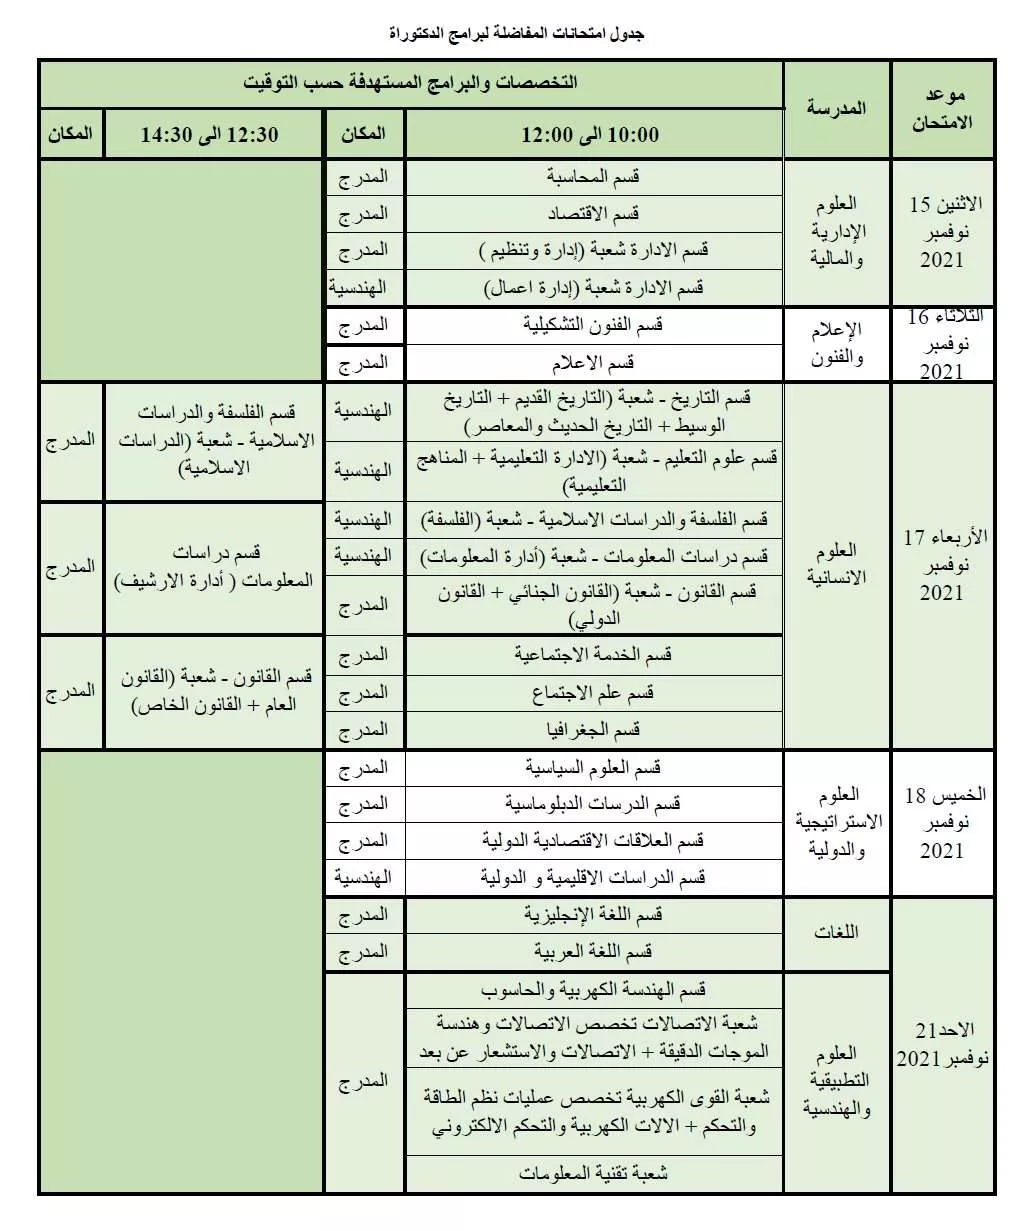 مواعيد إجراء امتحانات المفاضلة للطلبة المتقدمين لدراسة الدكتوراة بالأكاديمية الليبية للعام الدراسي 2021-2022م